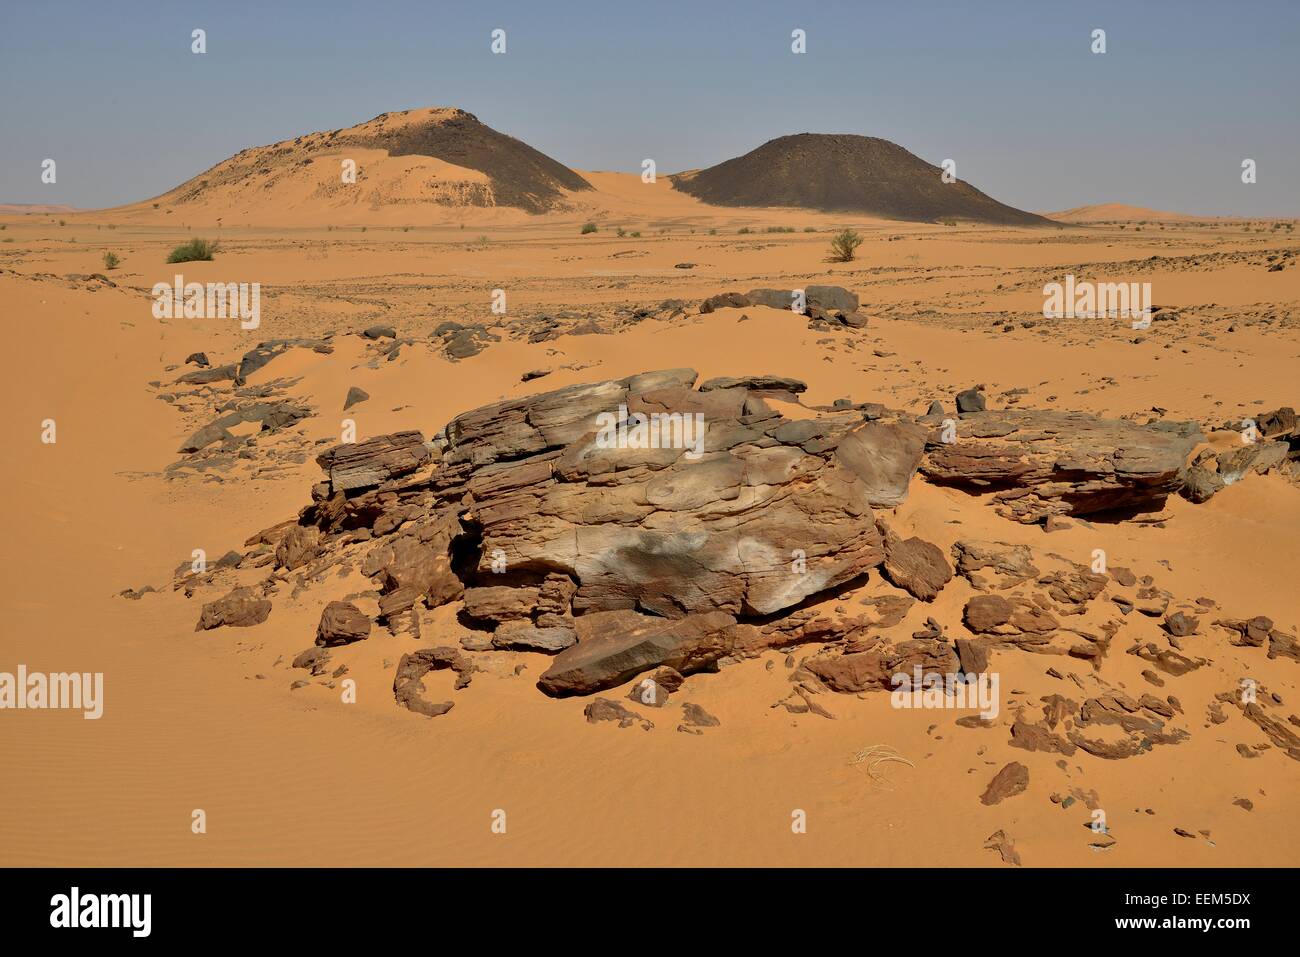 Landscape, Bayuda Desert, asch-Schamaliyya, Nubia, Sudan Stock Photo